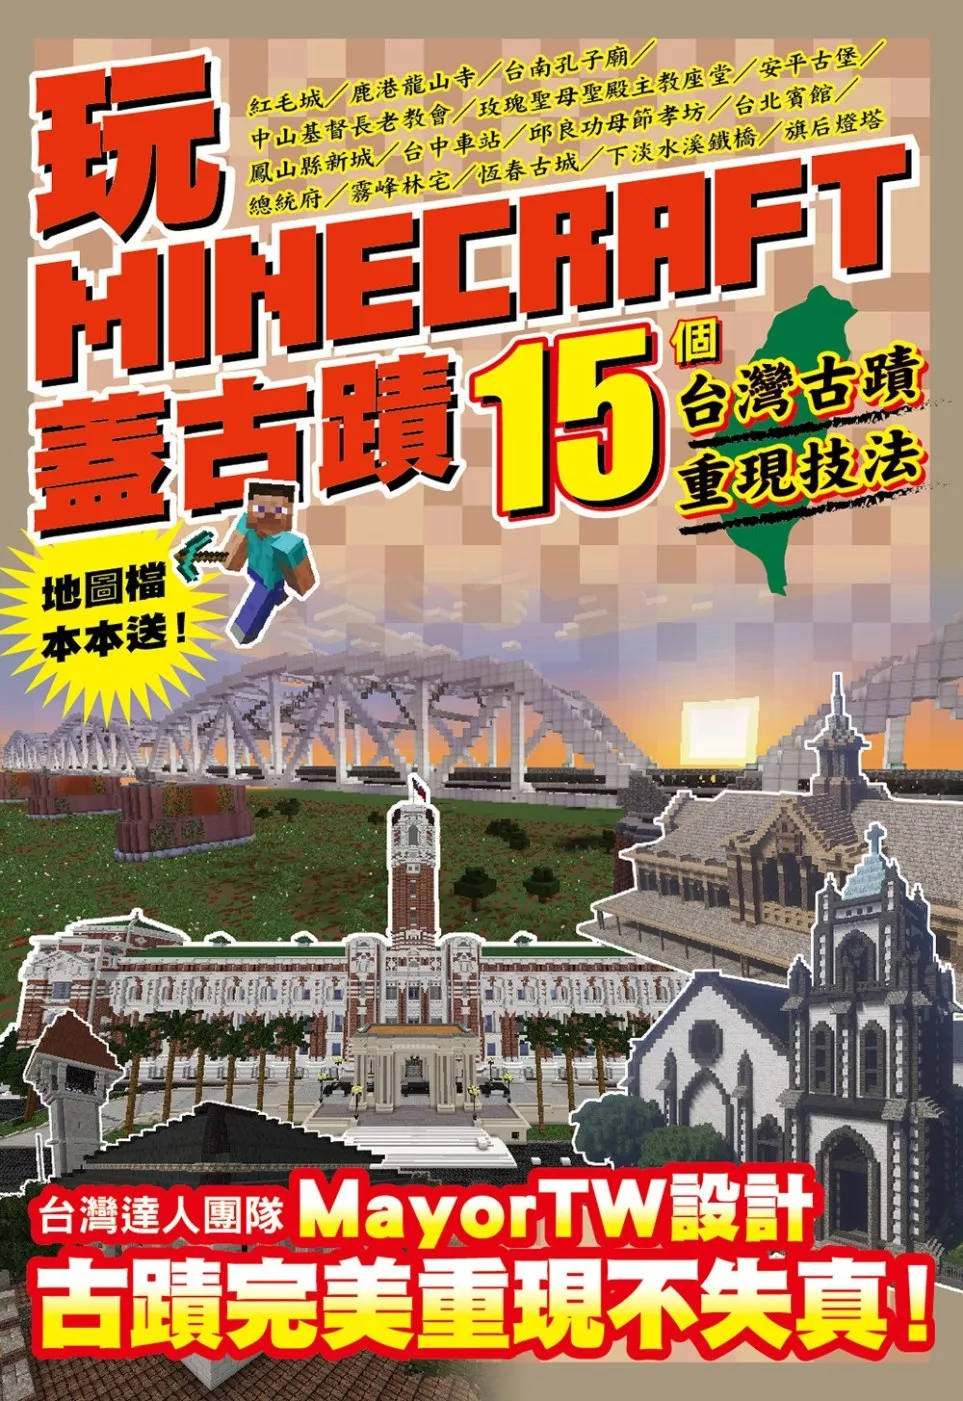 玩Minecraft 蓋古蹟：15個台灣古蹟重現技法